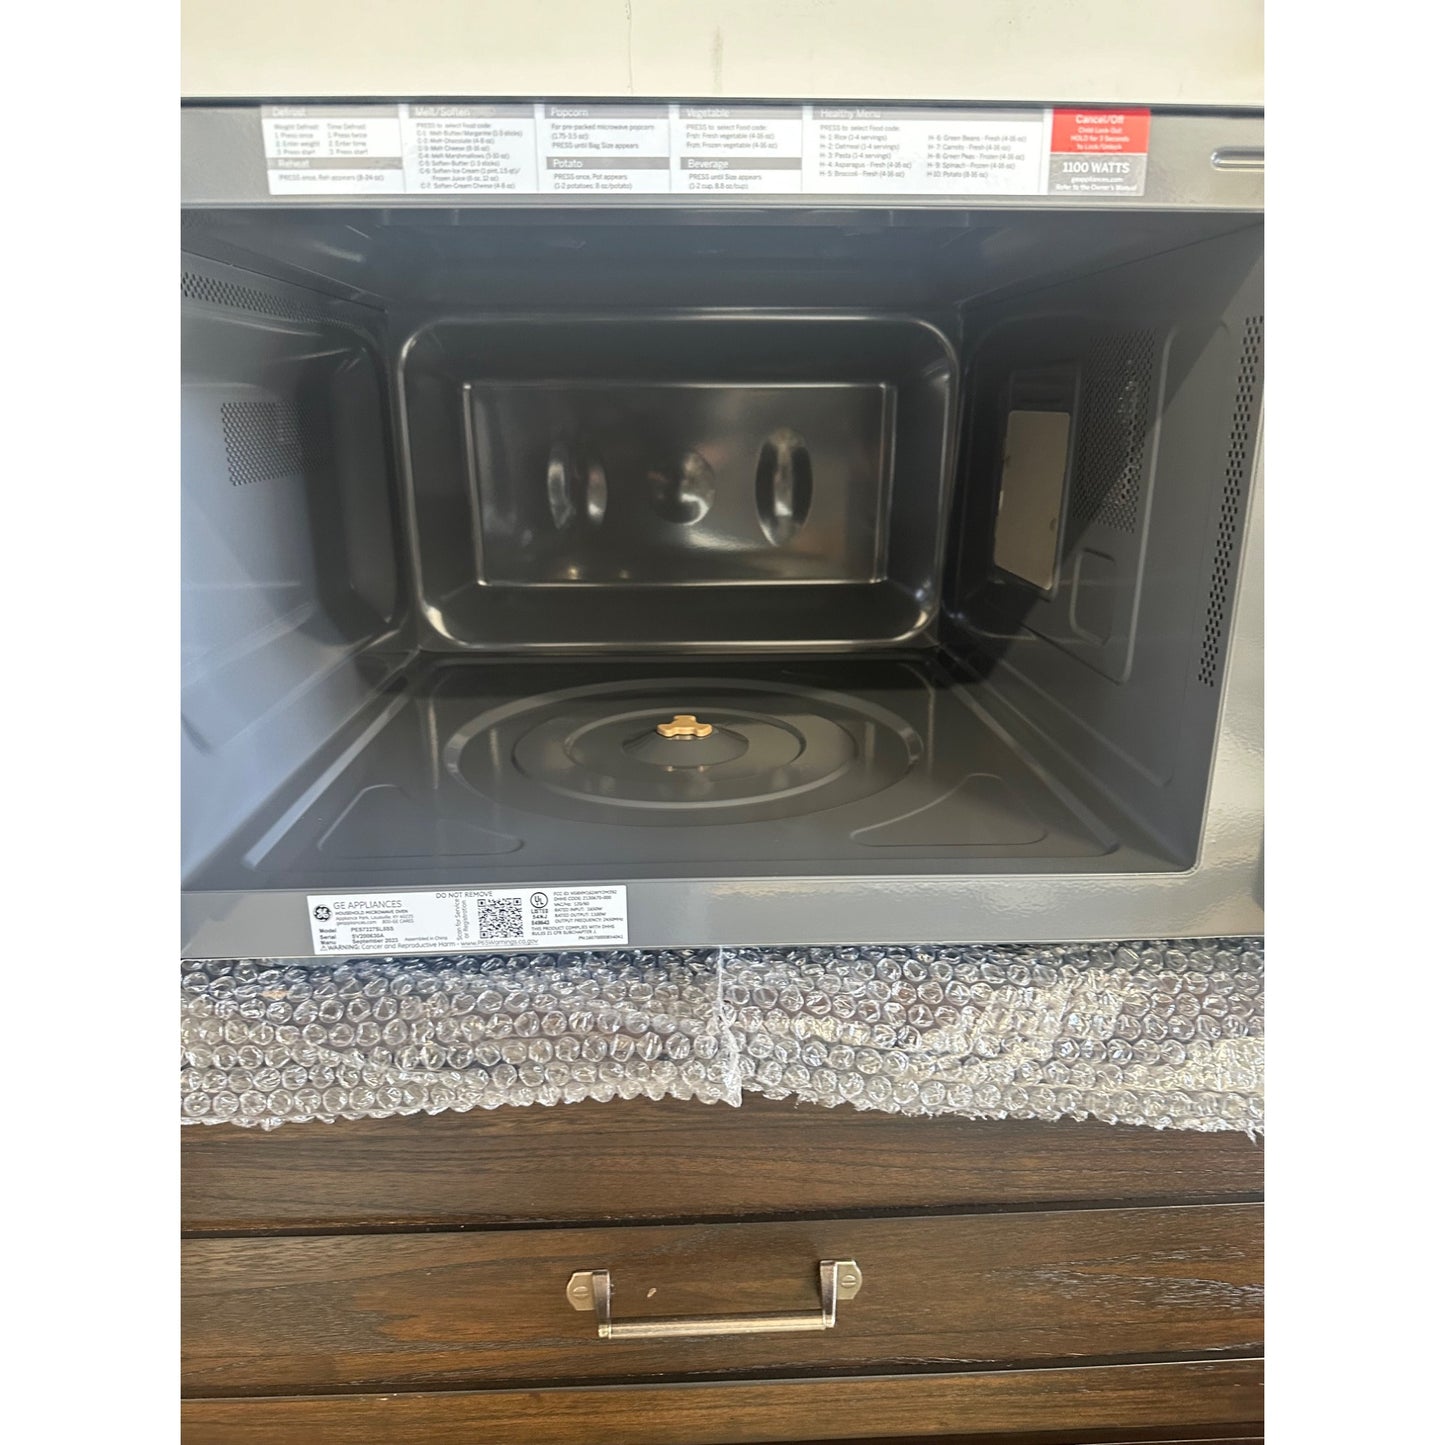 GE countertop microwave 2.2 cu ft